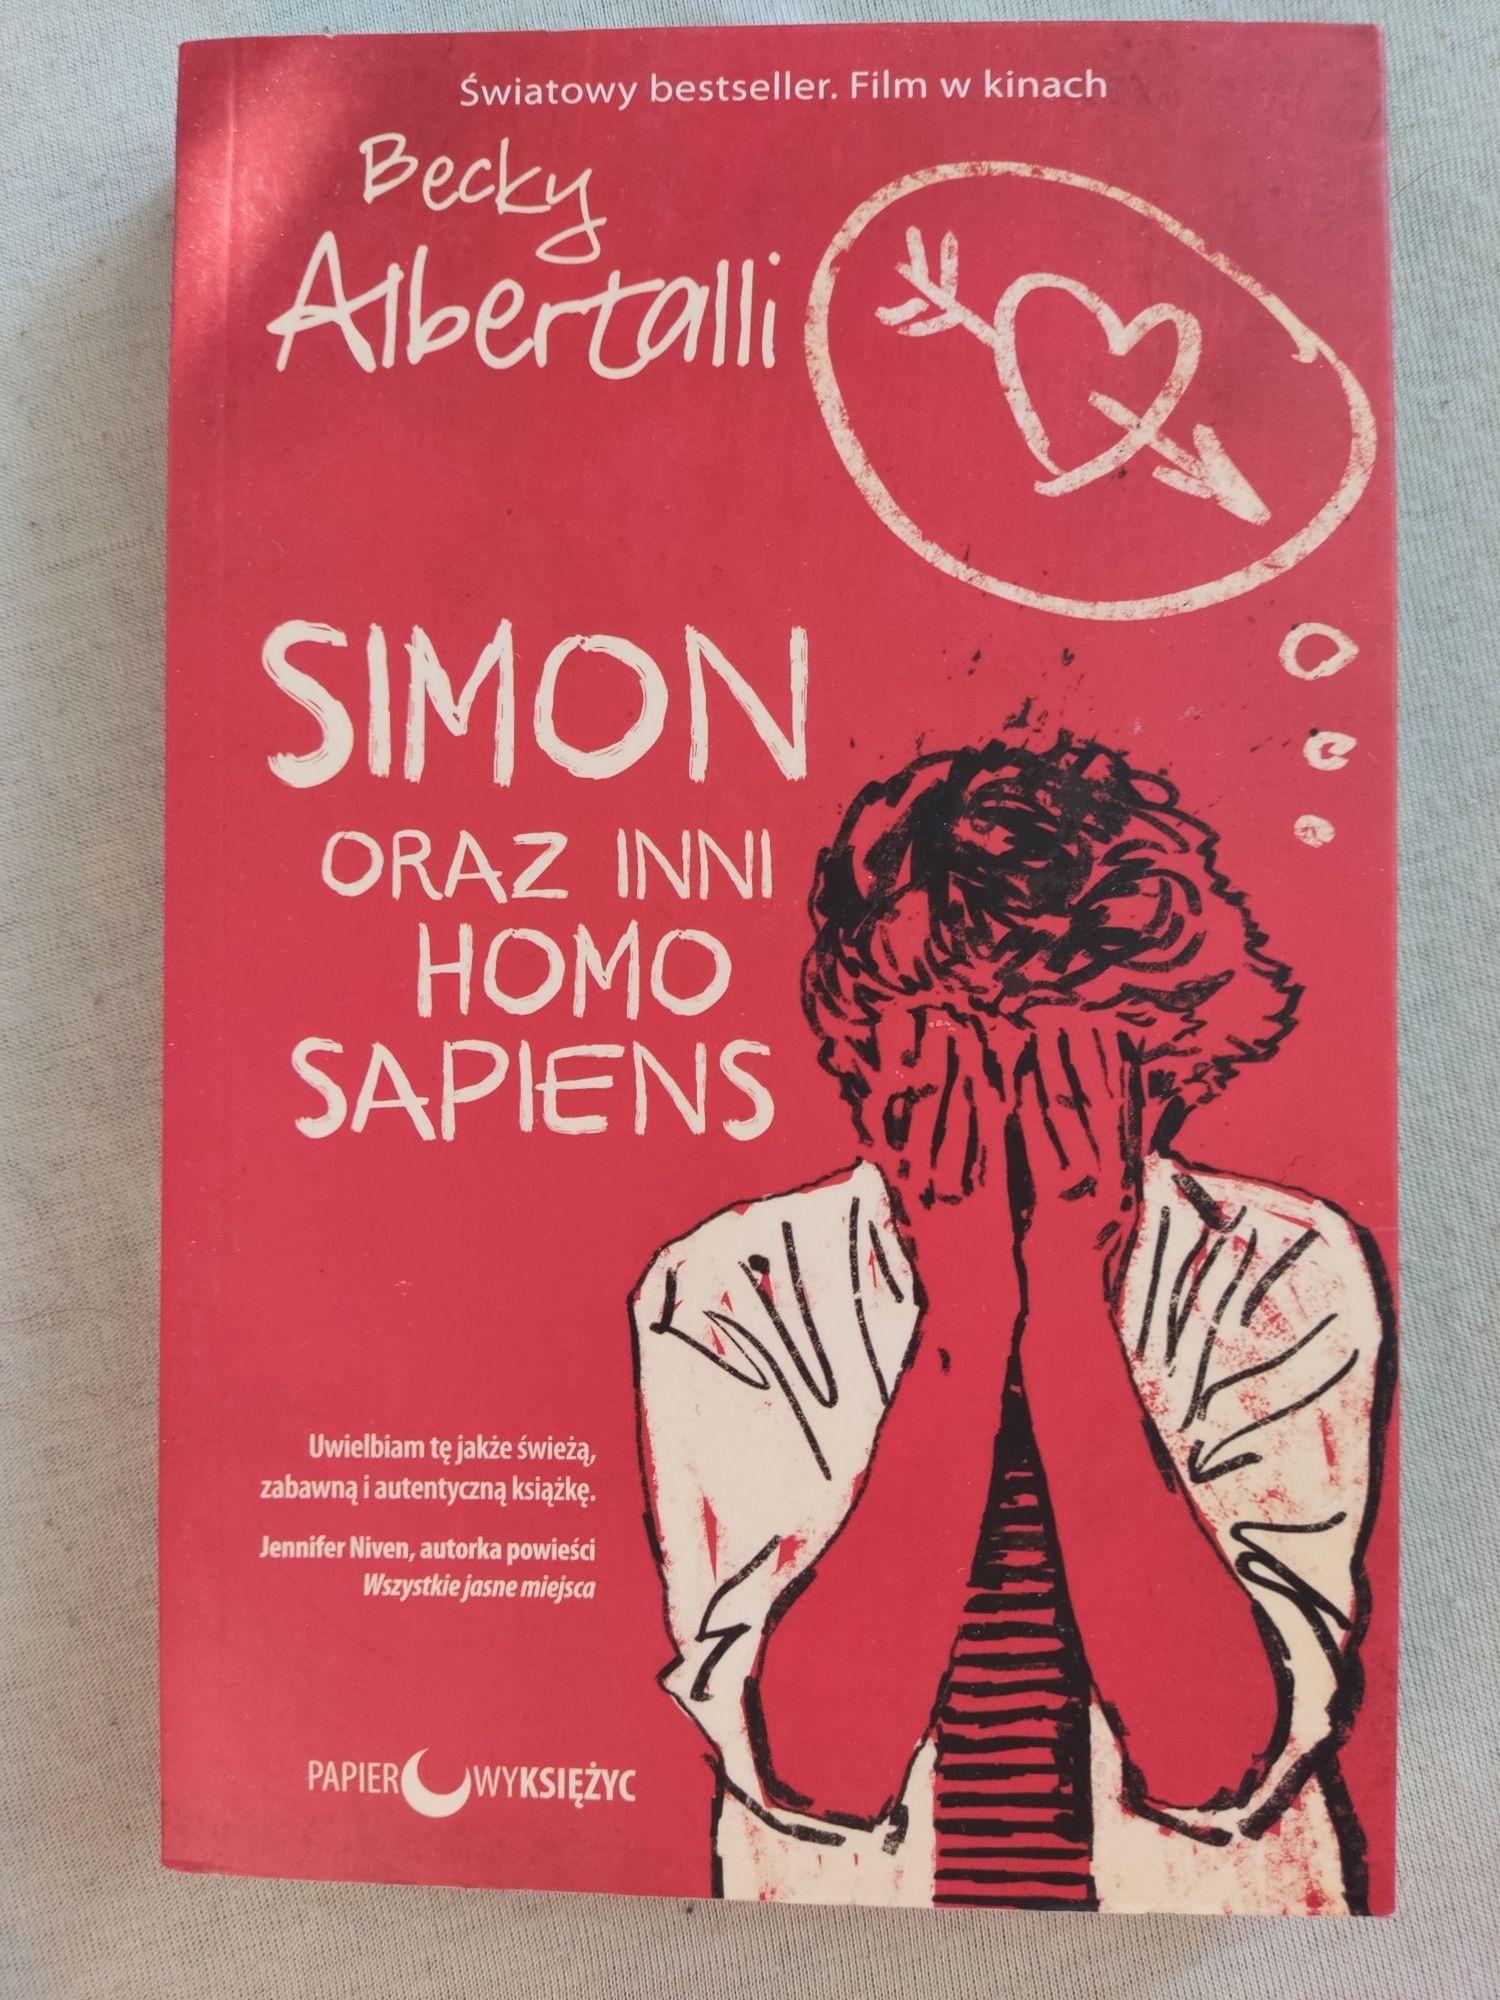 Simon oraz inni Homo Sapiens - Becky Albertalii